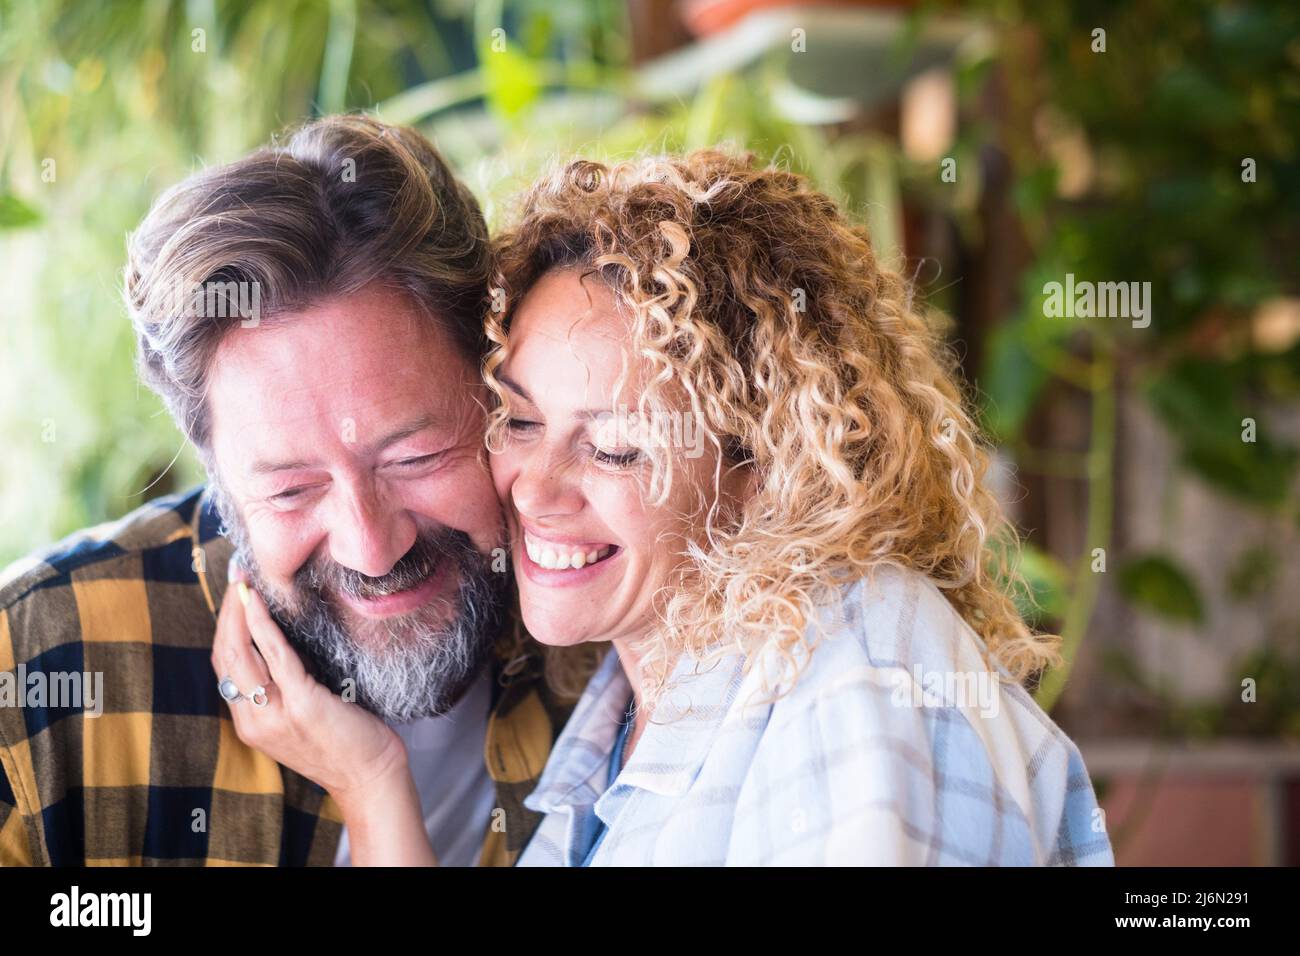 Joyeux et joyeux portrait de couple caucasien d'adulte sourire et profiter de l'amour et de la relation ensemble - homme avec la barbe et femme avec blond long curly Banque D'Images